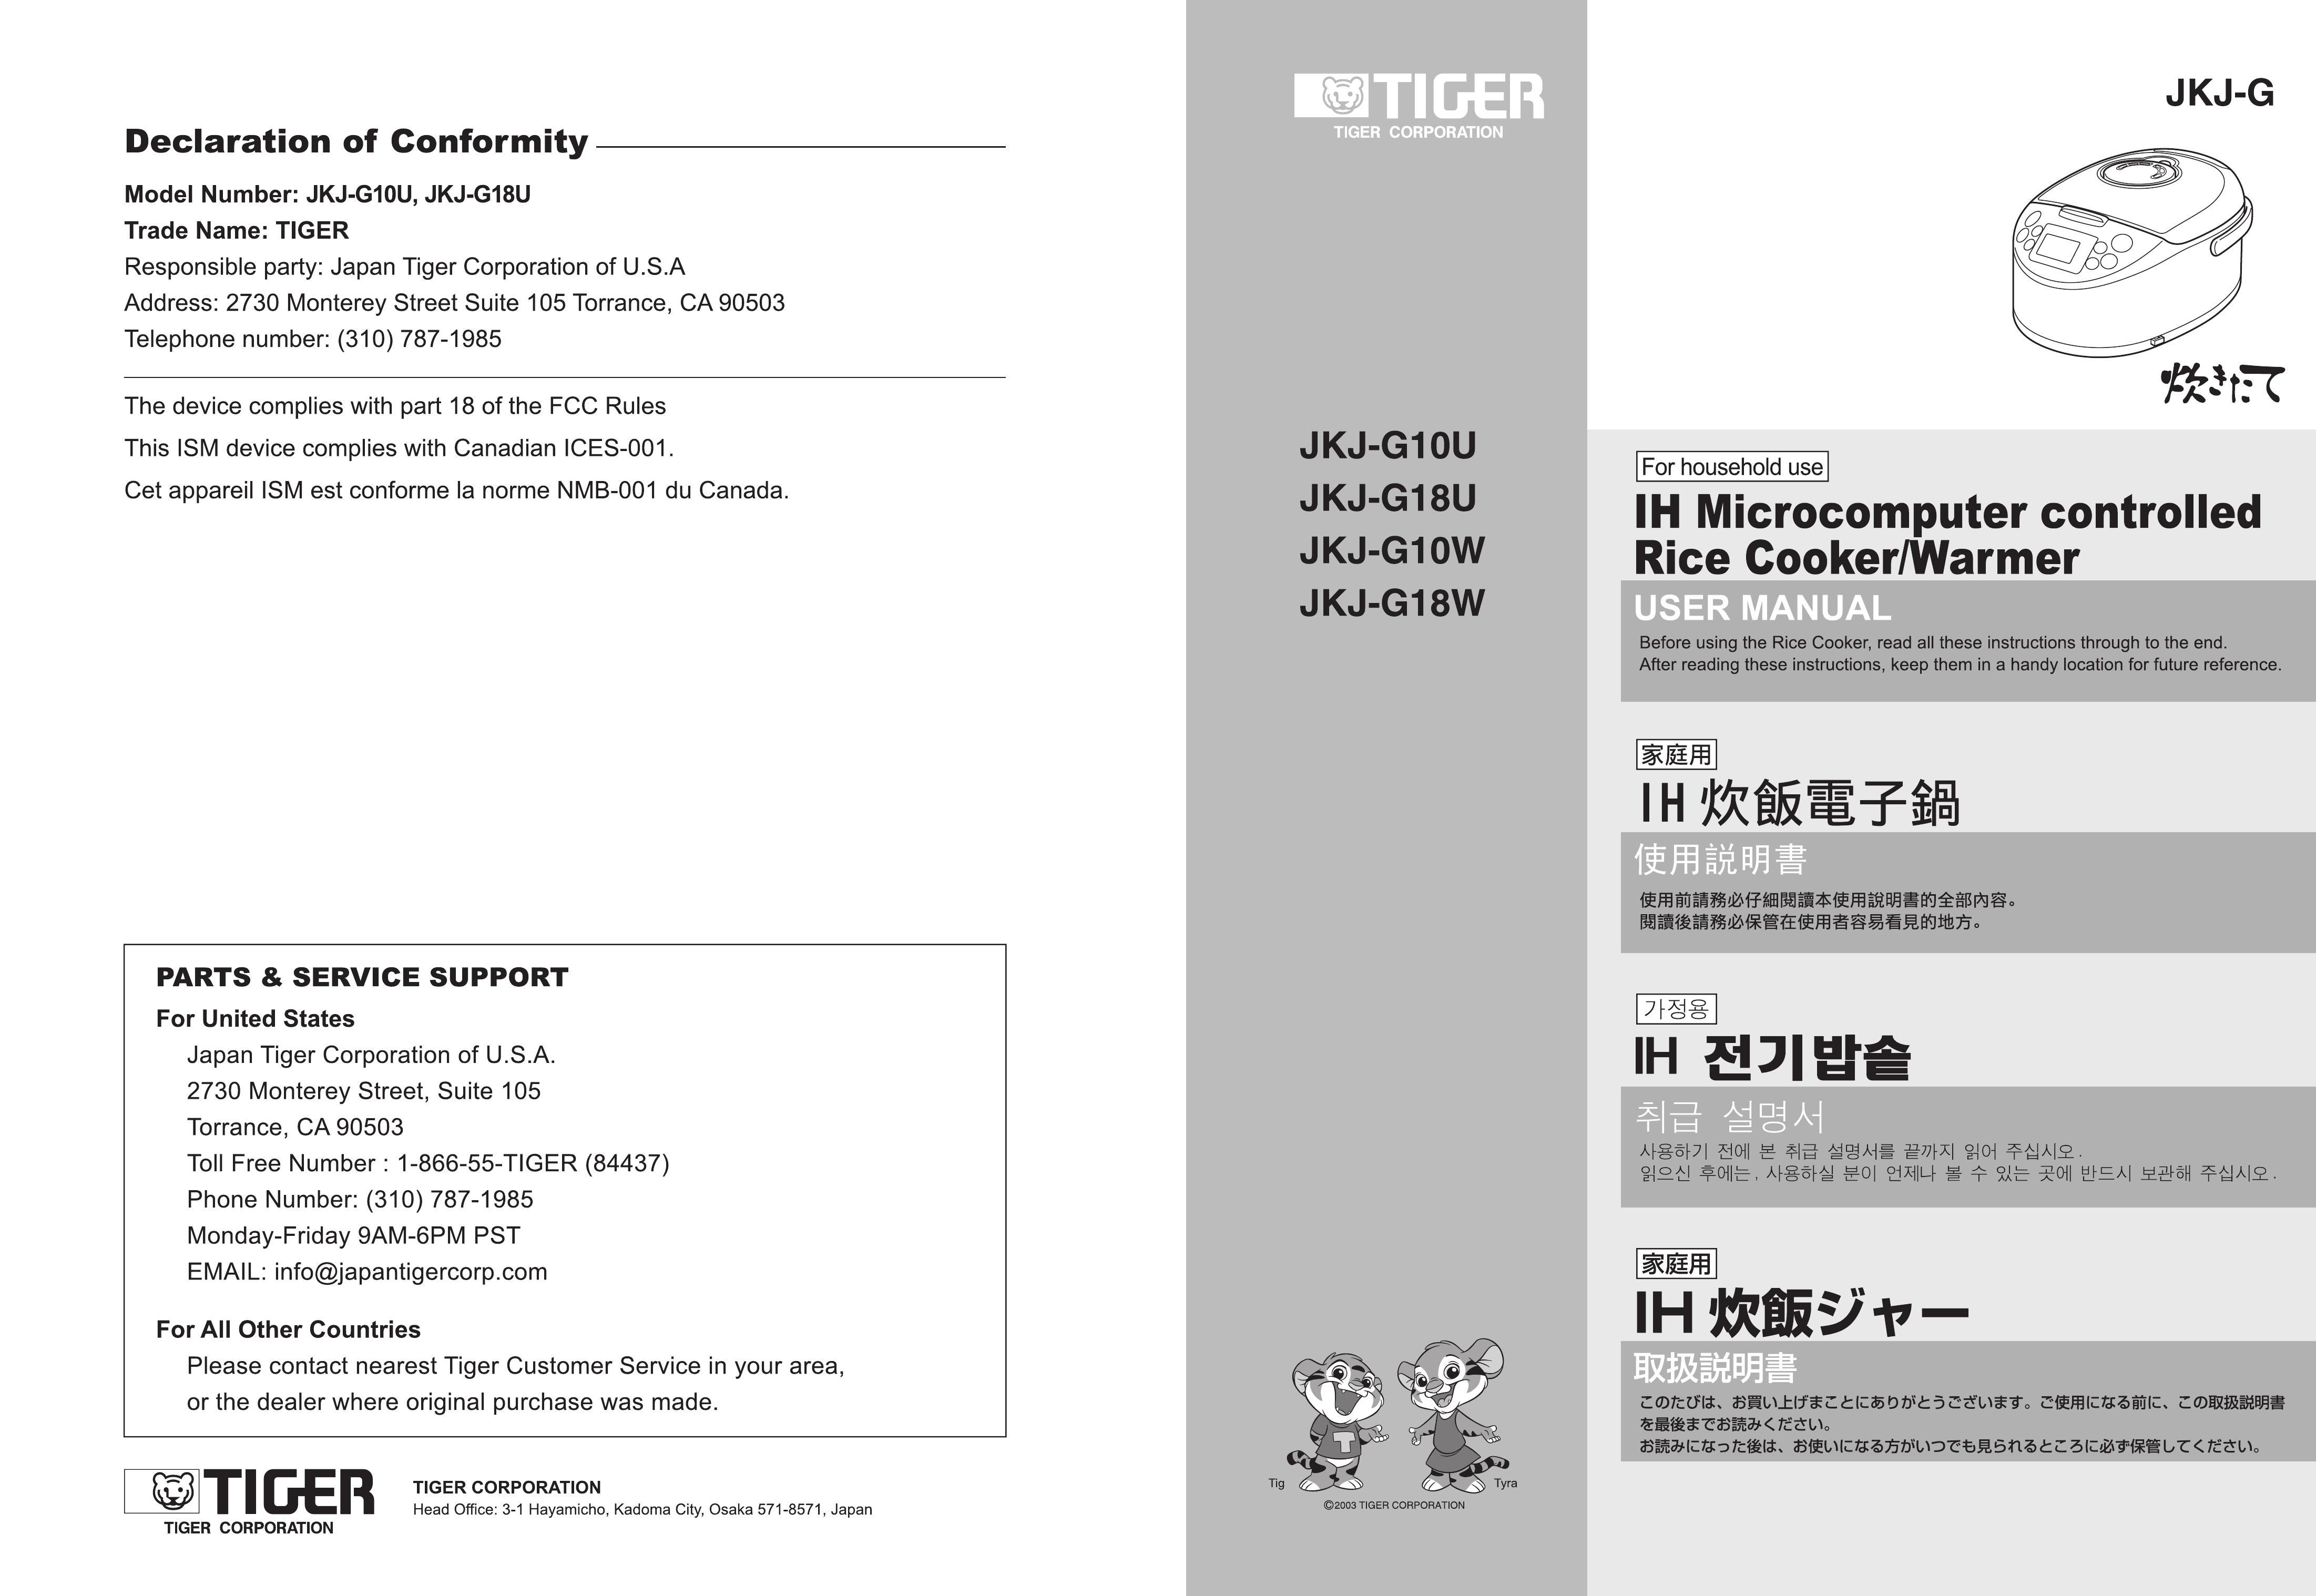 Tiger Products Co., Ltd JKJ-G10U Rice Cooker User Manual